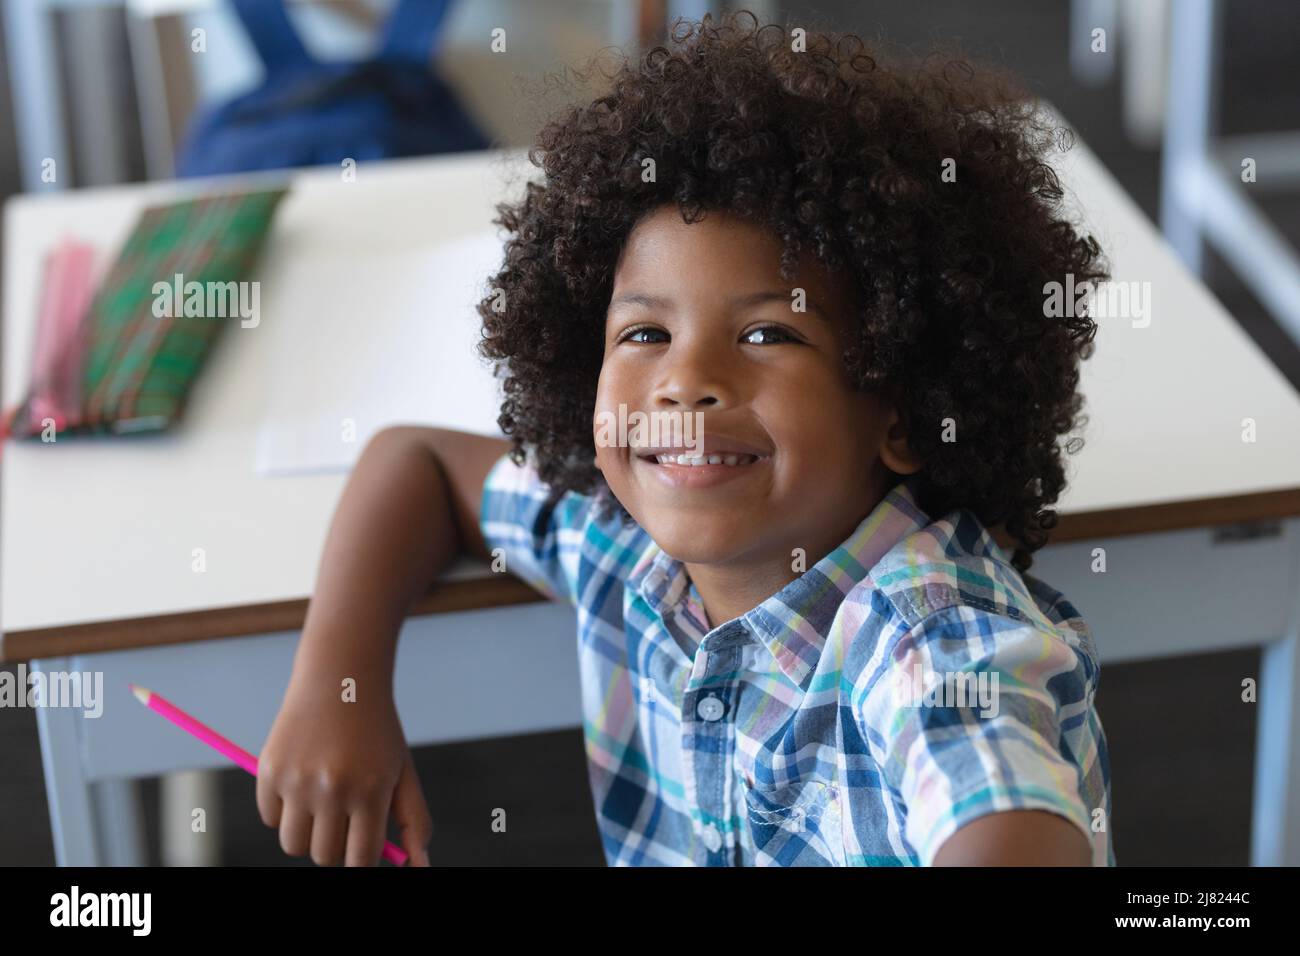 Porträt eines lächelnden afroamerikanischen Grundschuljungen mit Afro-Frisur am Schreibtisch Stockfoto